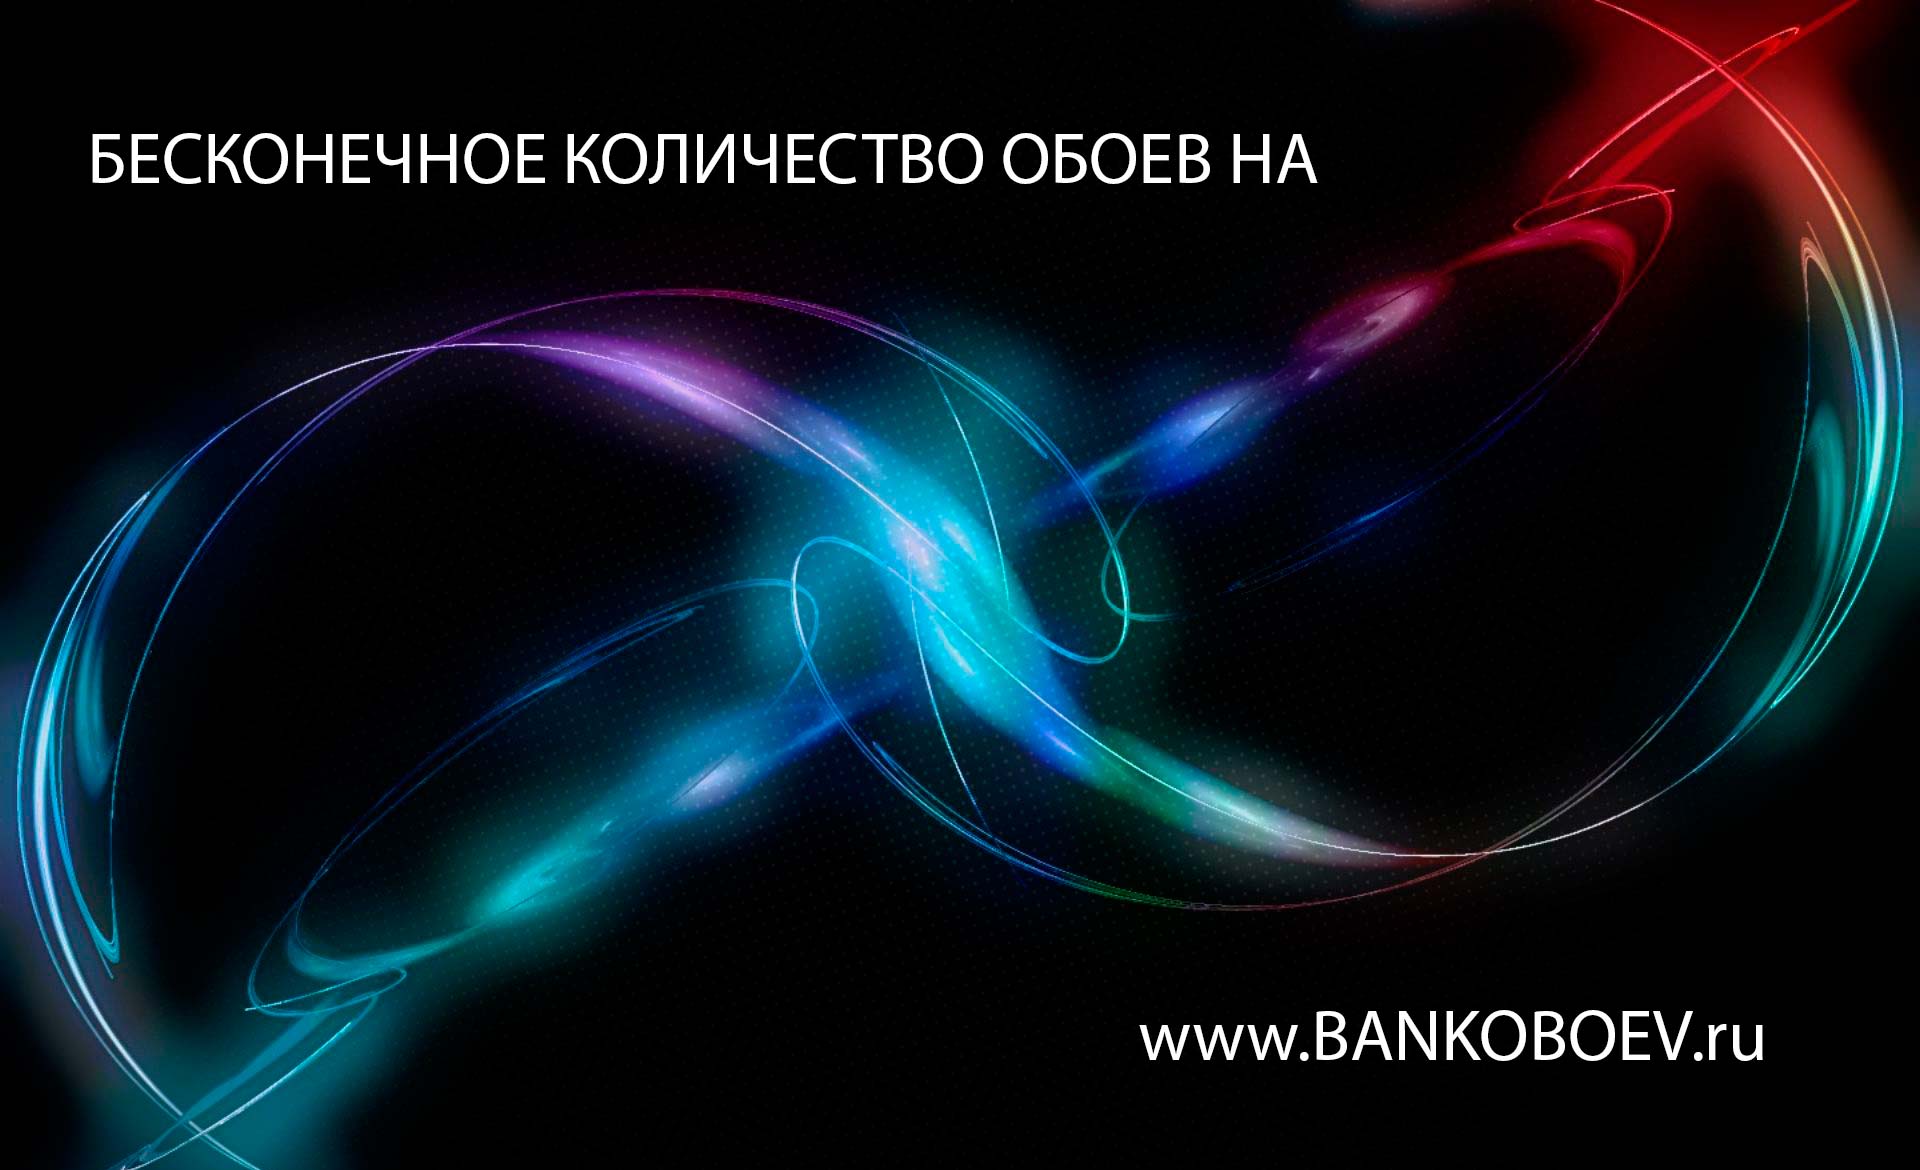 Bankoboev Ru Image Mjkxotg0 Jpg